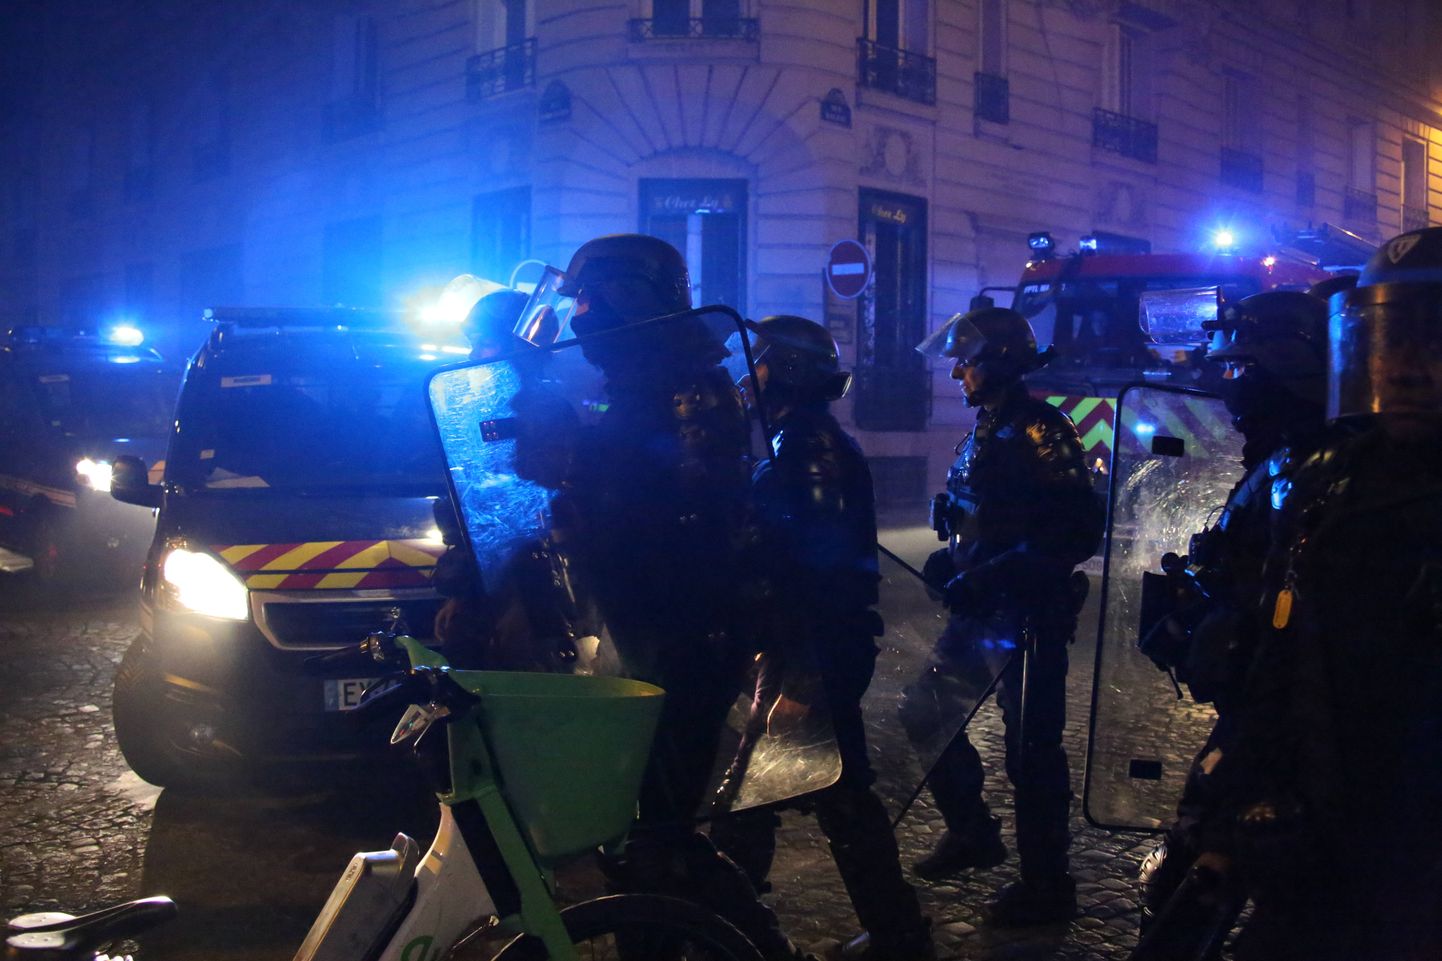 Märulipolitsei möödunud nädalavahetusel Pariisis.